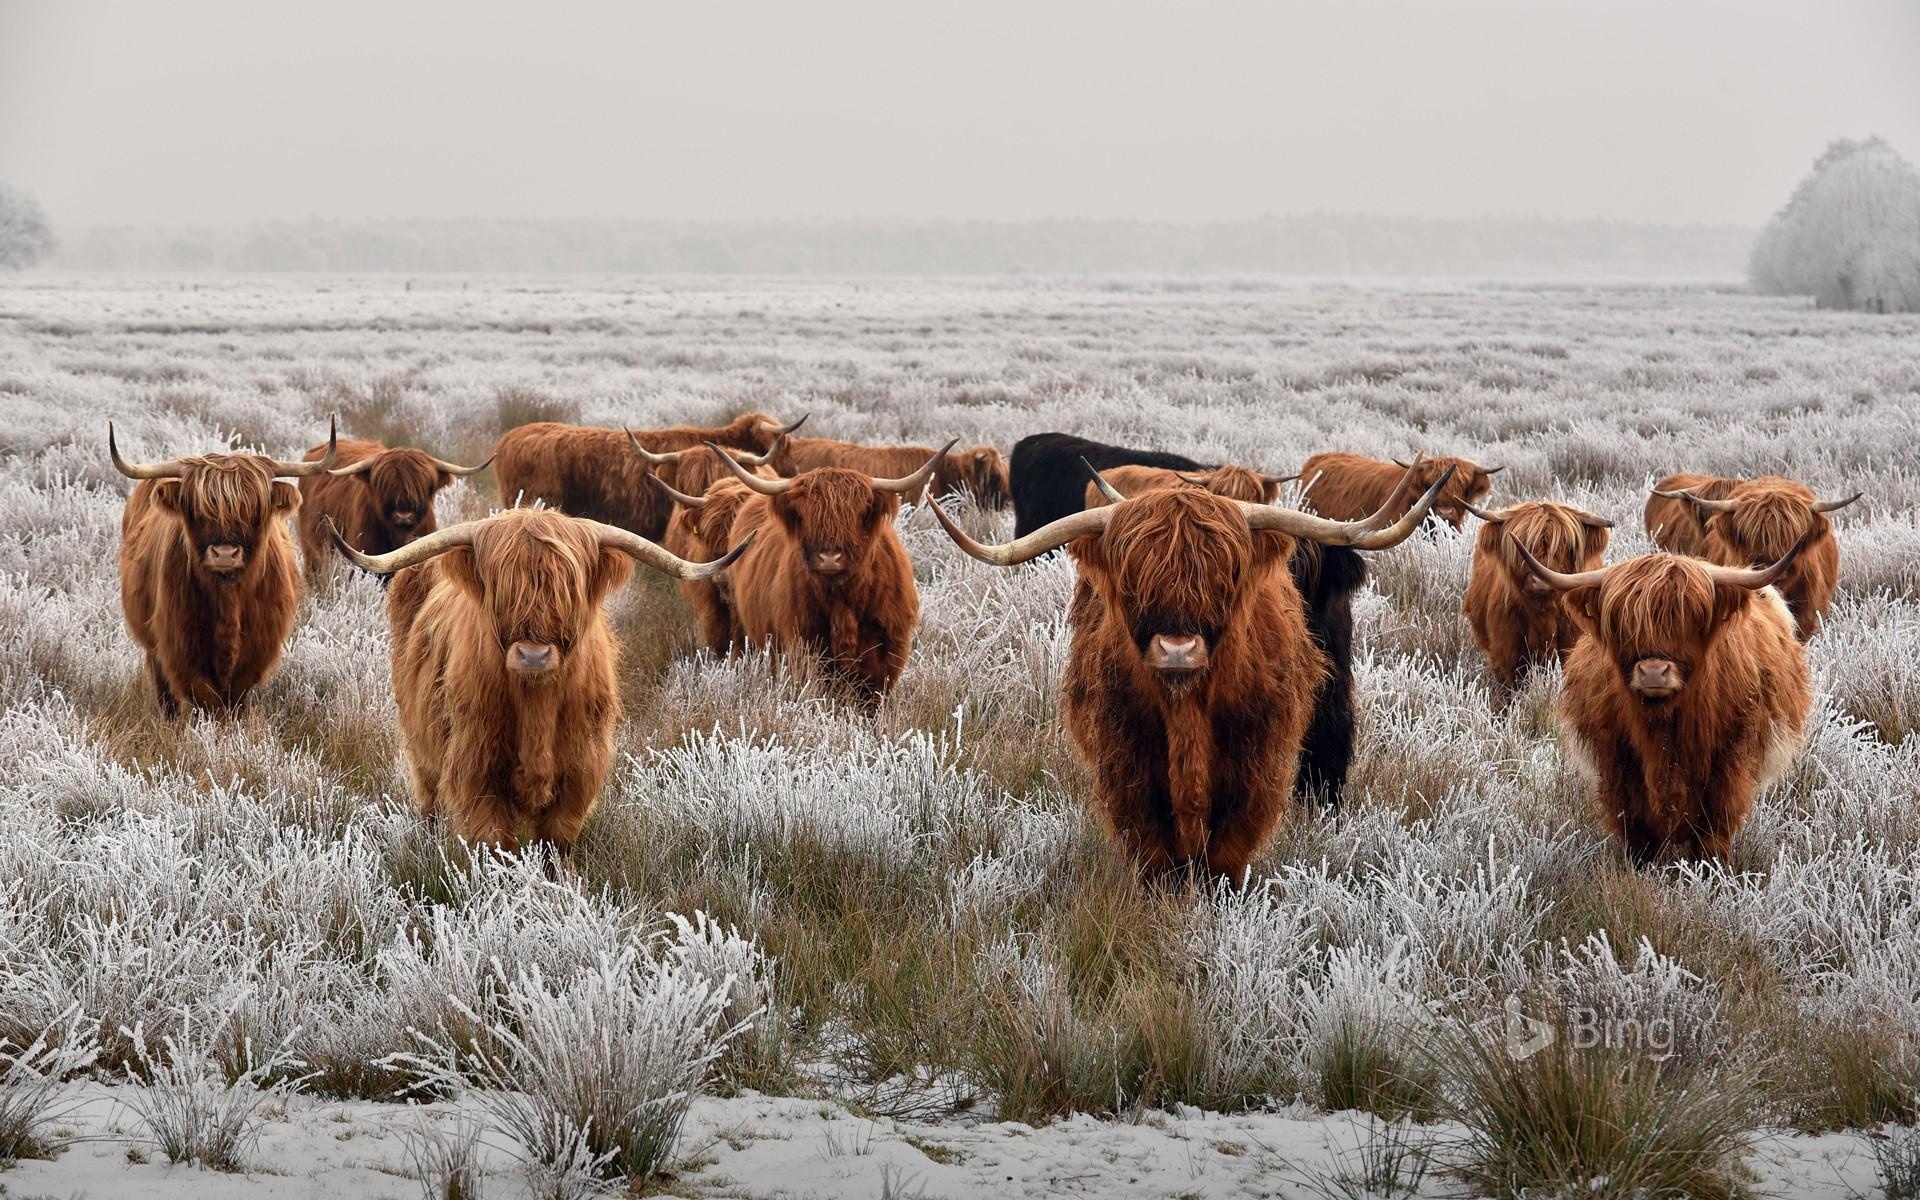 Cow desktop wallpapers, Bovine beauty, Farm animals, Countryside scenes, 1920x1200 HD Desktop